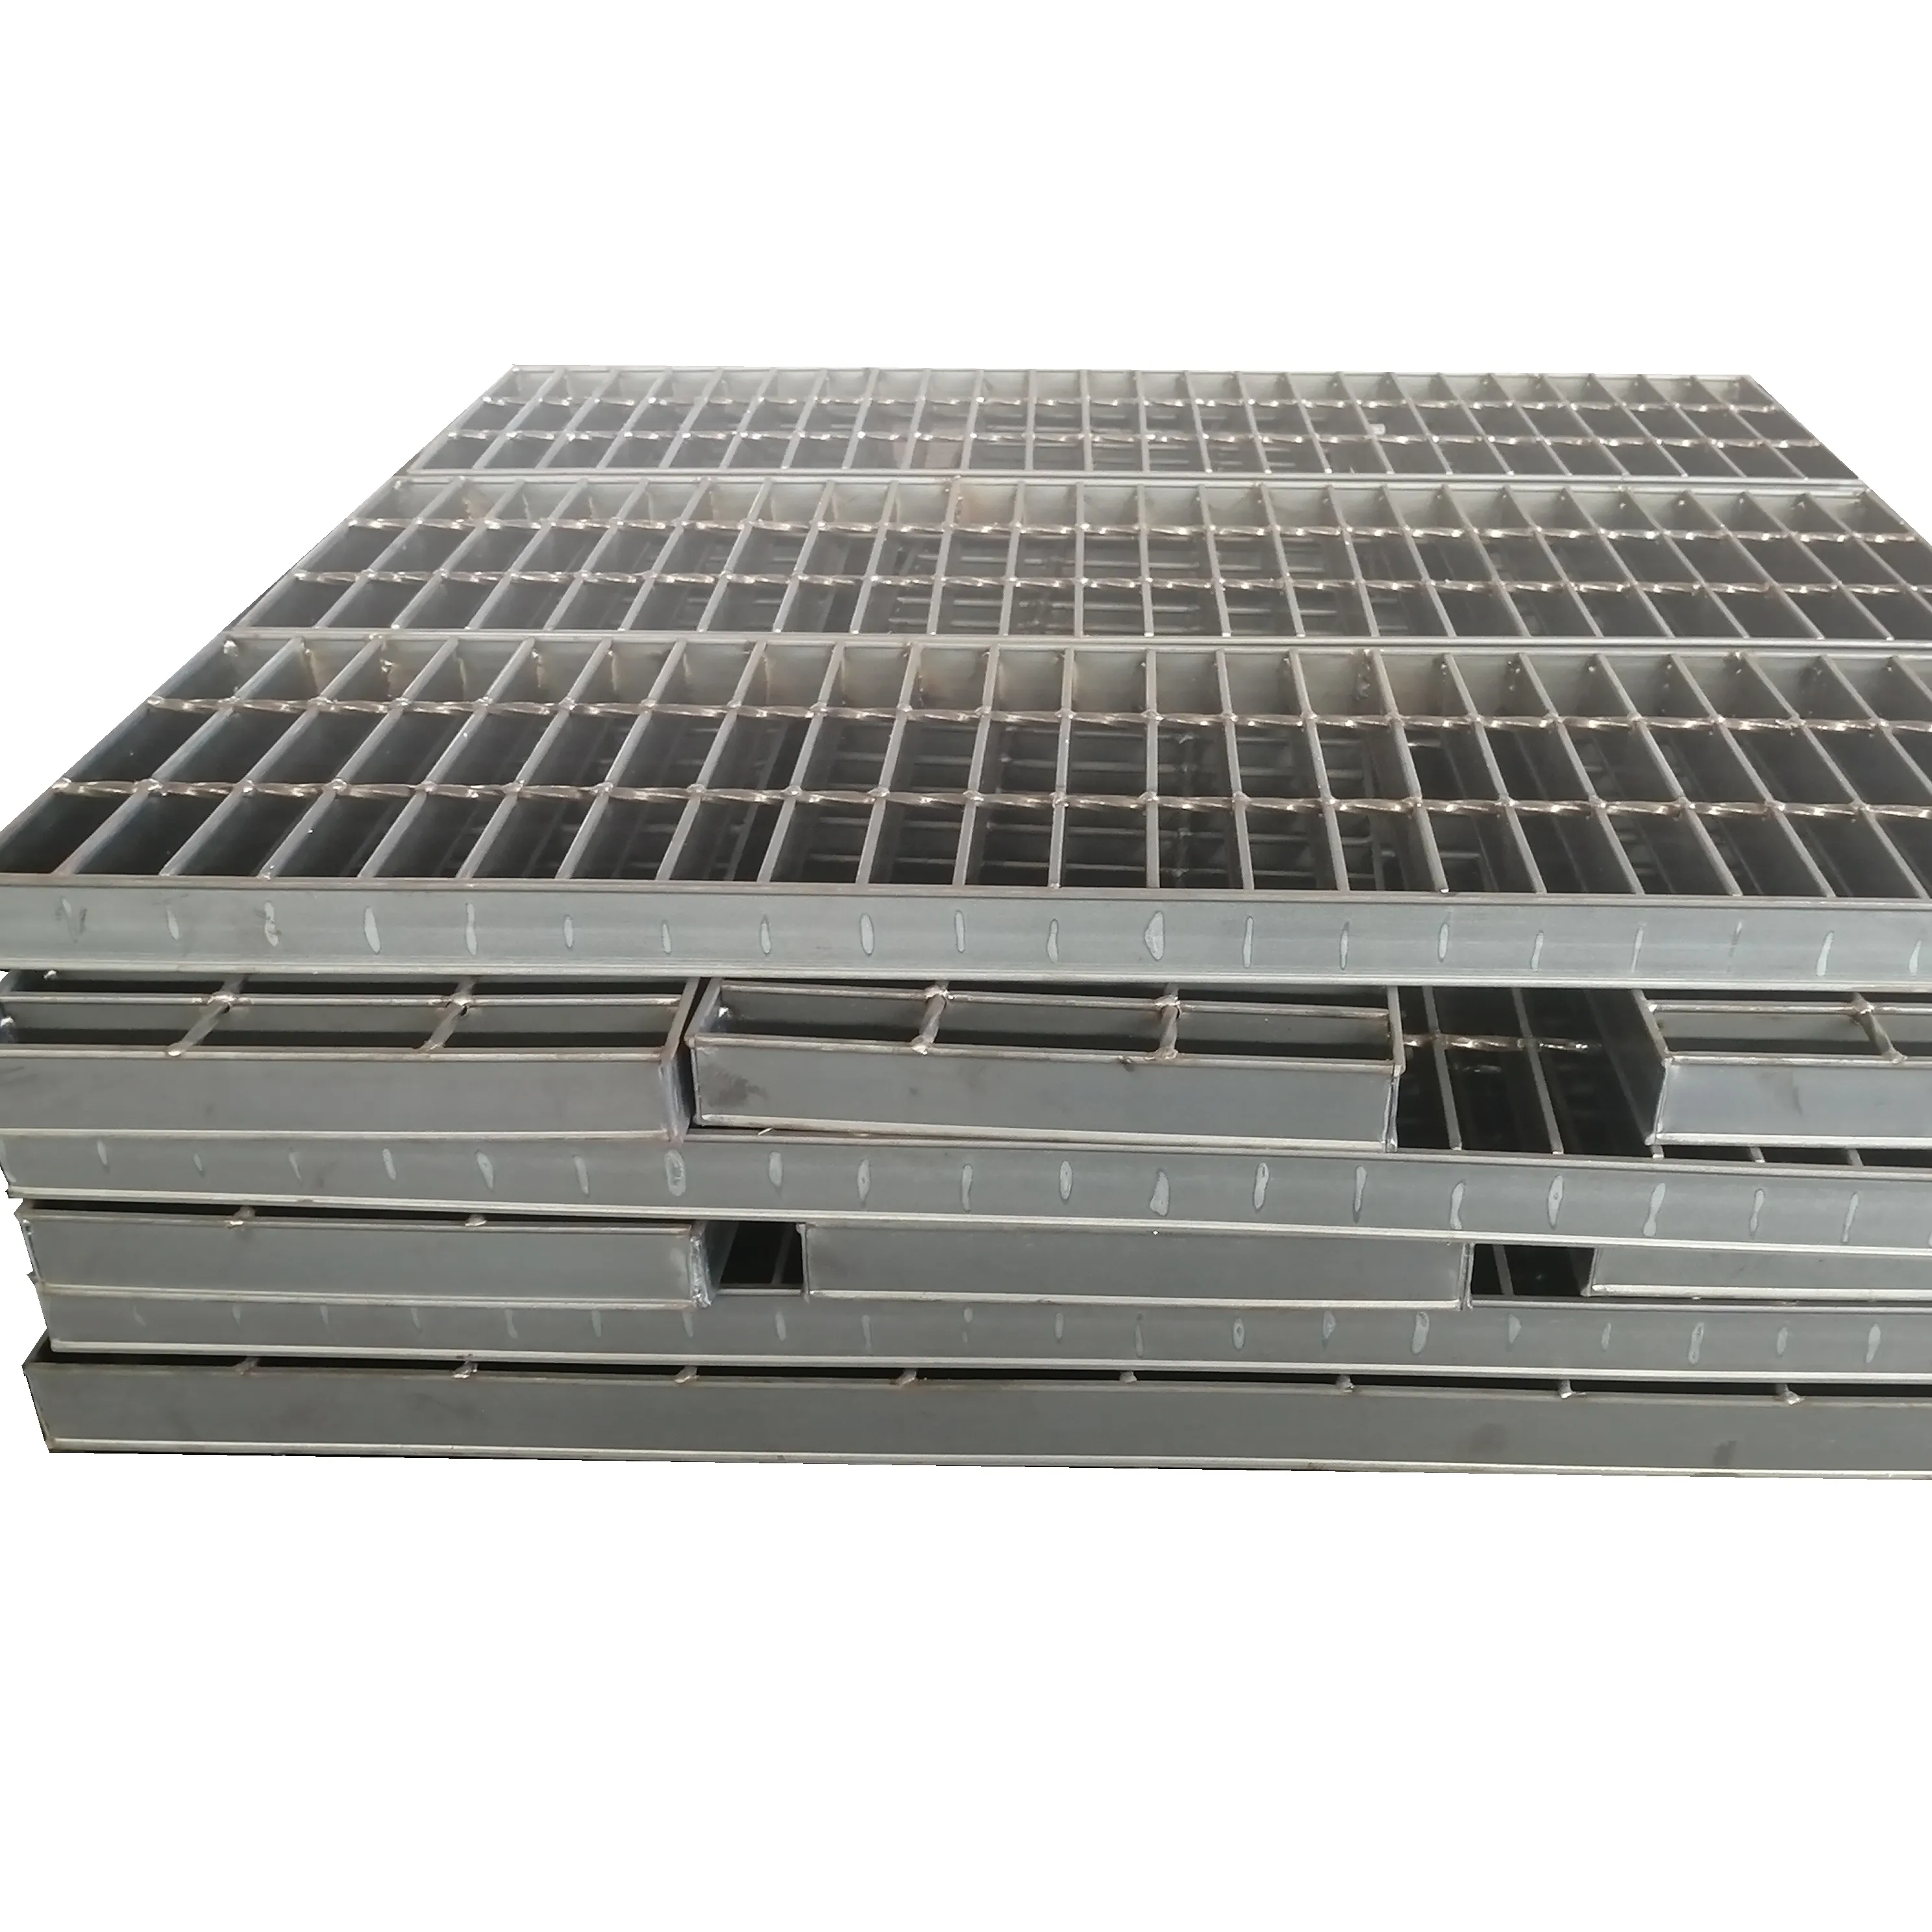 Rack de poids Morden en acier inoxydable galvanisé, à bas prix, structure métallique, grille de sol